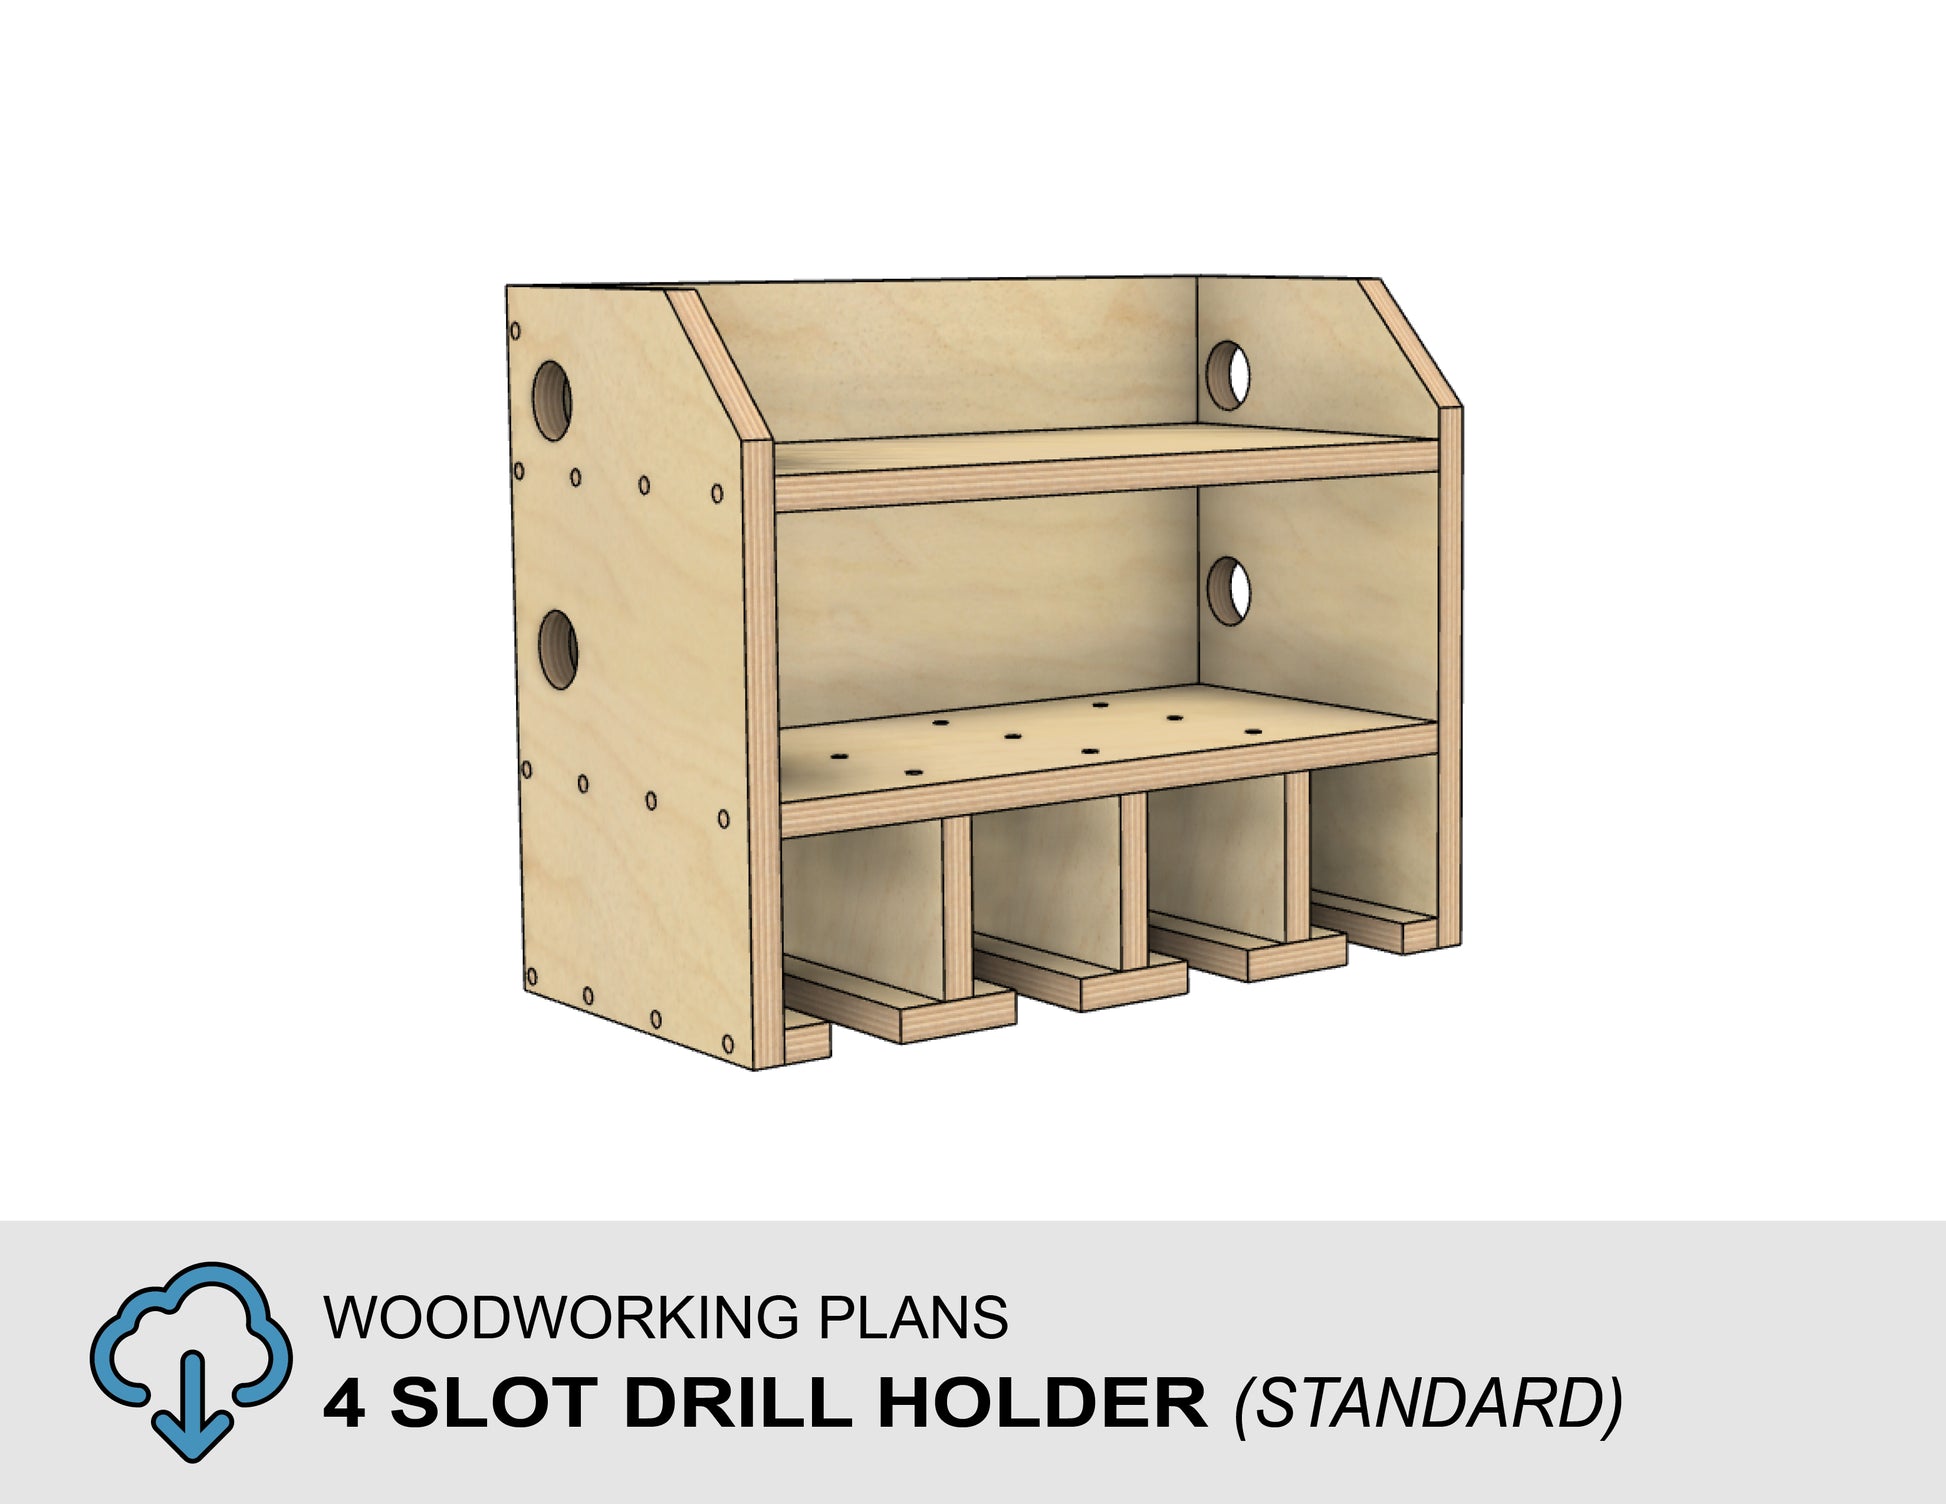 Ridgid tool box. Diy drill storage/ organizer  Tool box organization,  Dewalt tools, Power tool storage